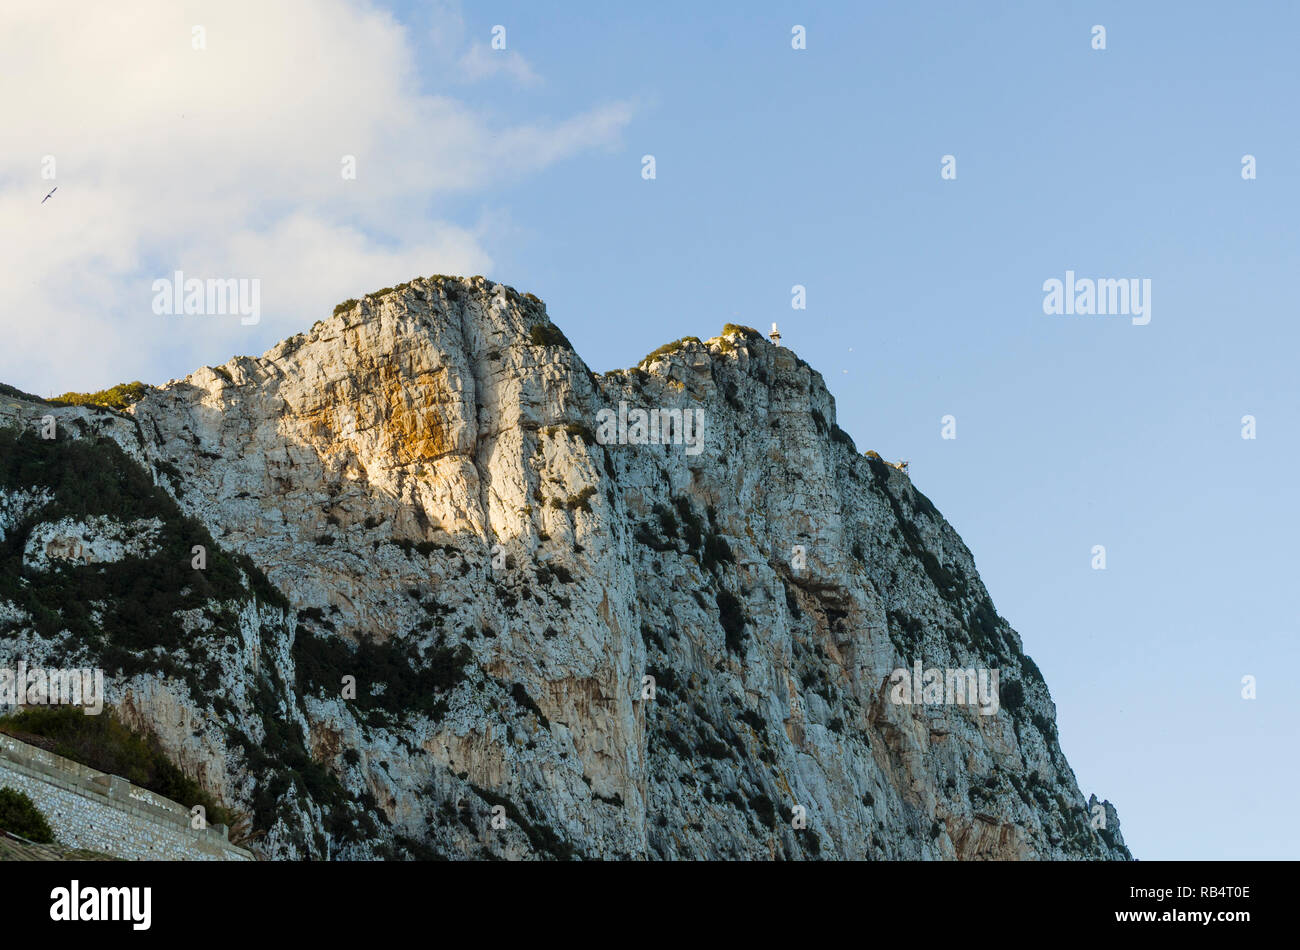 Punta di Roccia di Gibilterra oltremare sul territorio britannico, Riserva Naturale della Rocca Superiore, Gibilterra, UK, Penisola Iberica, l'Europa. Foto Stock